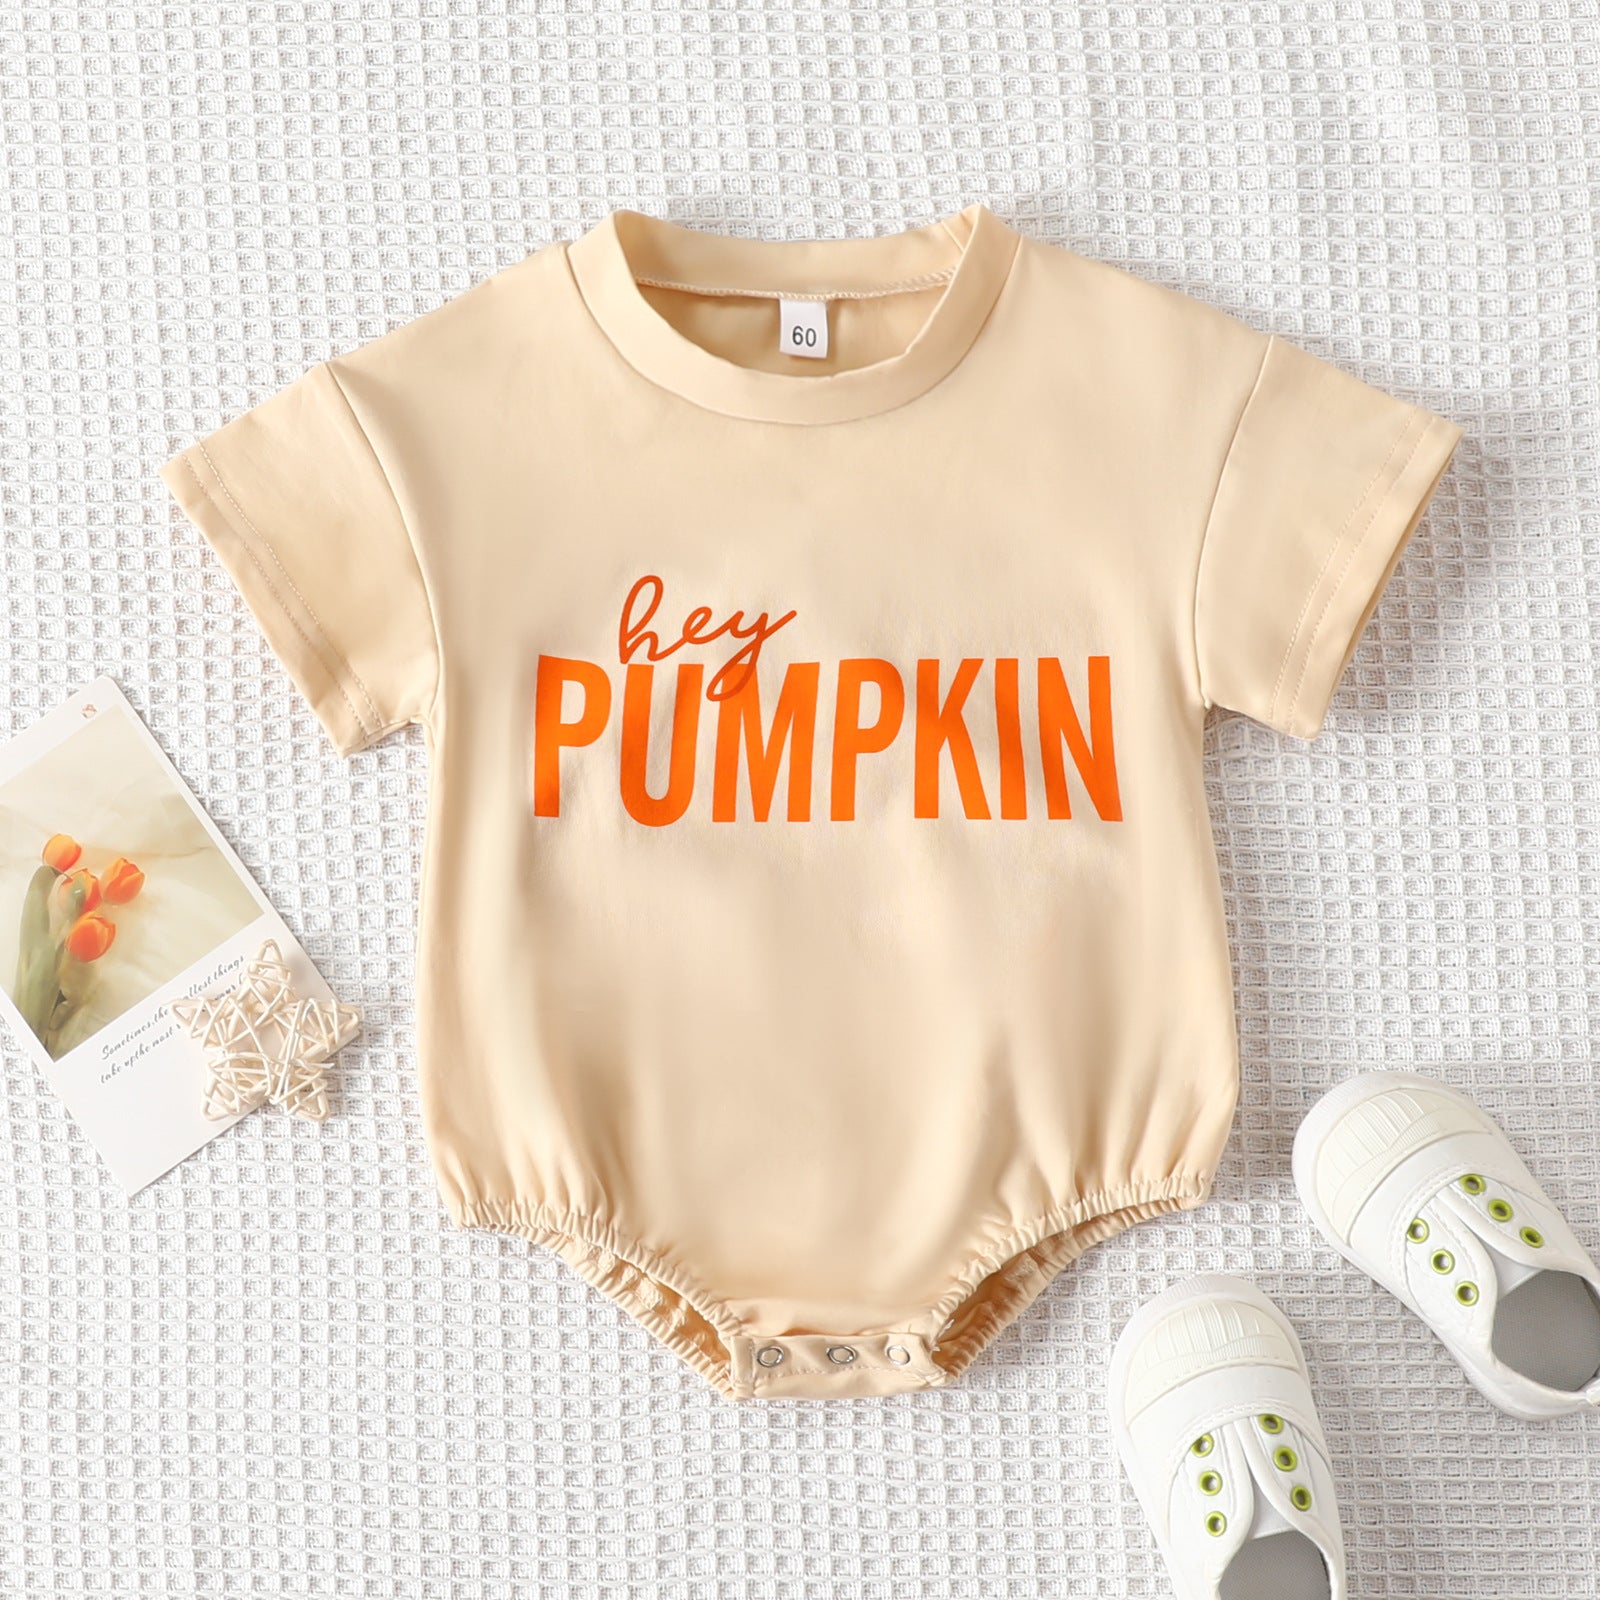 Hey Pumpkin!